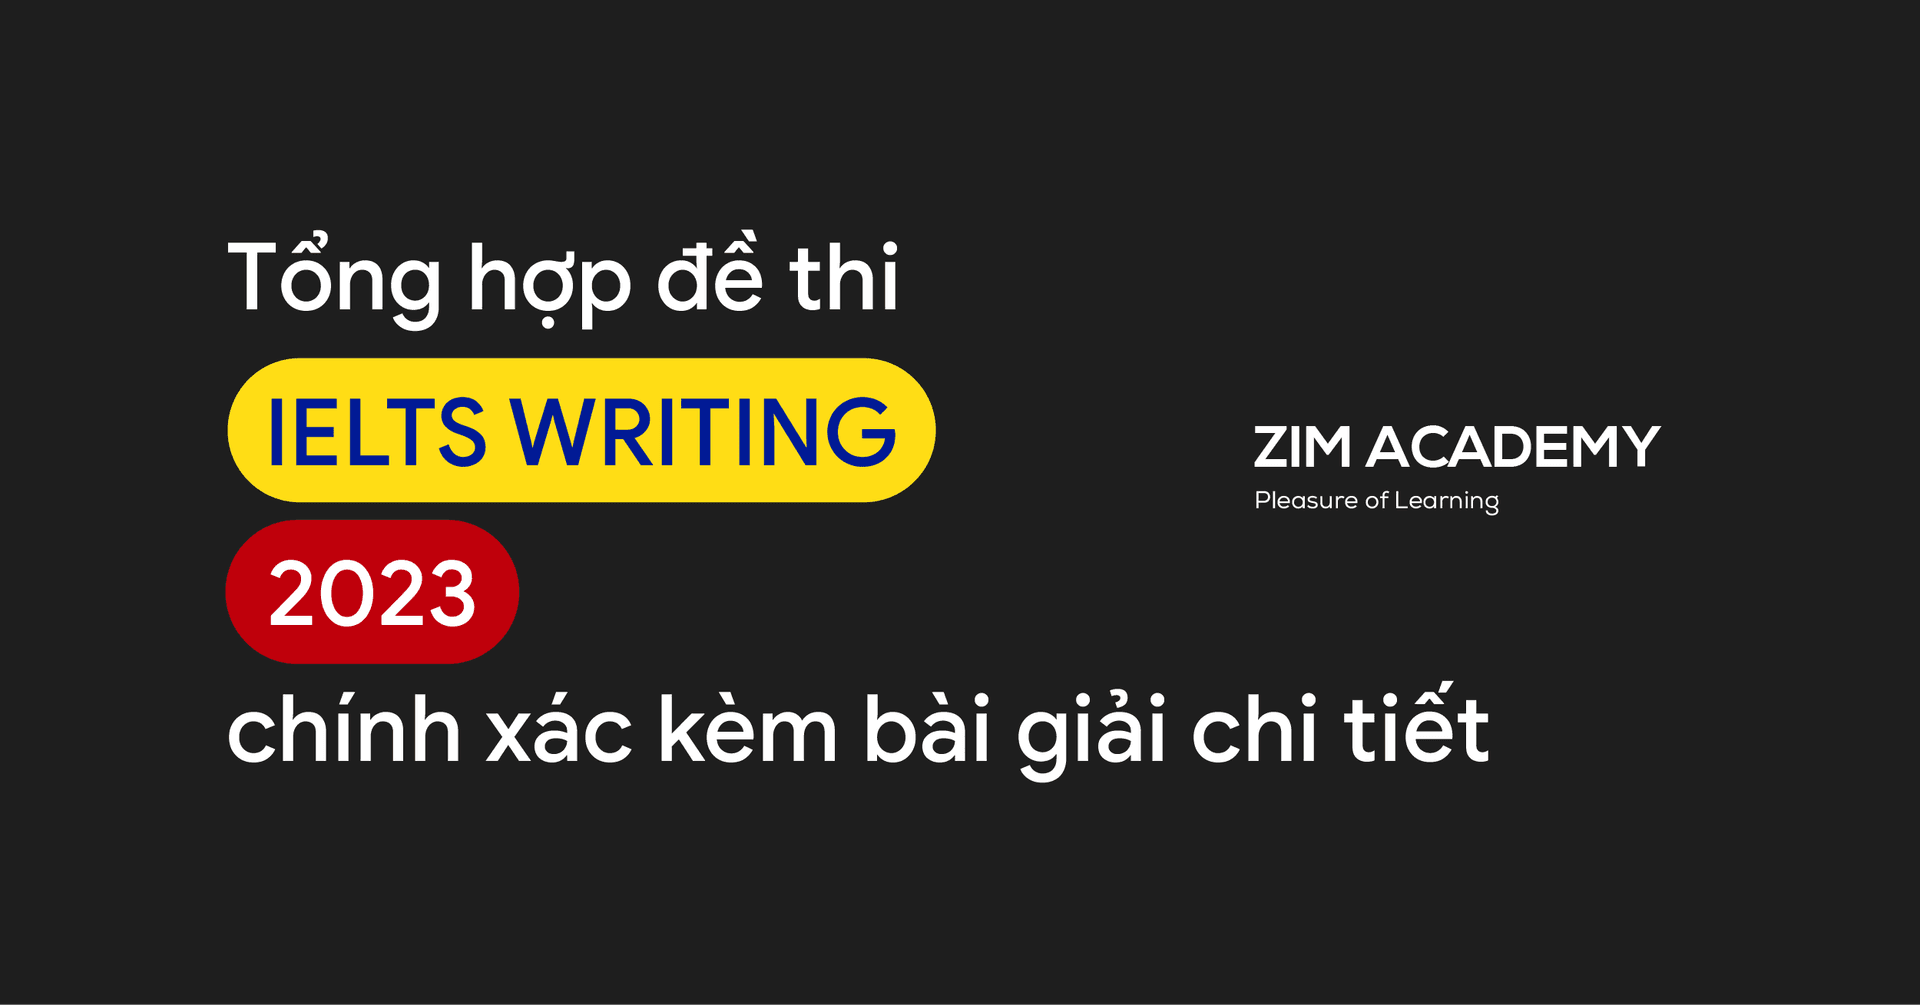 tong-hop-de-thi-ielts-writing-2023-kem-bai-mau-cap-nhat-lien-tuc